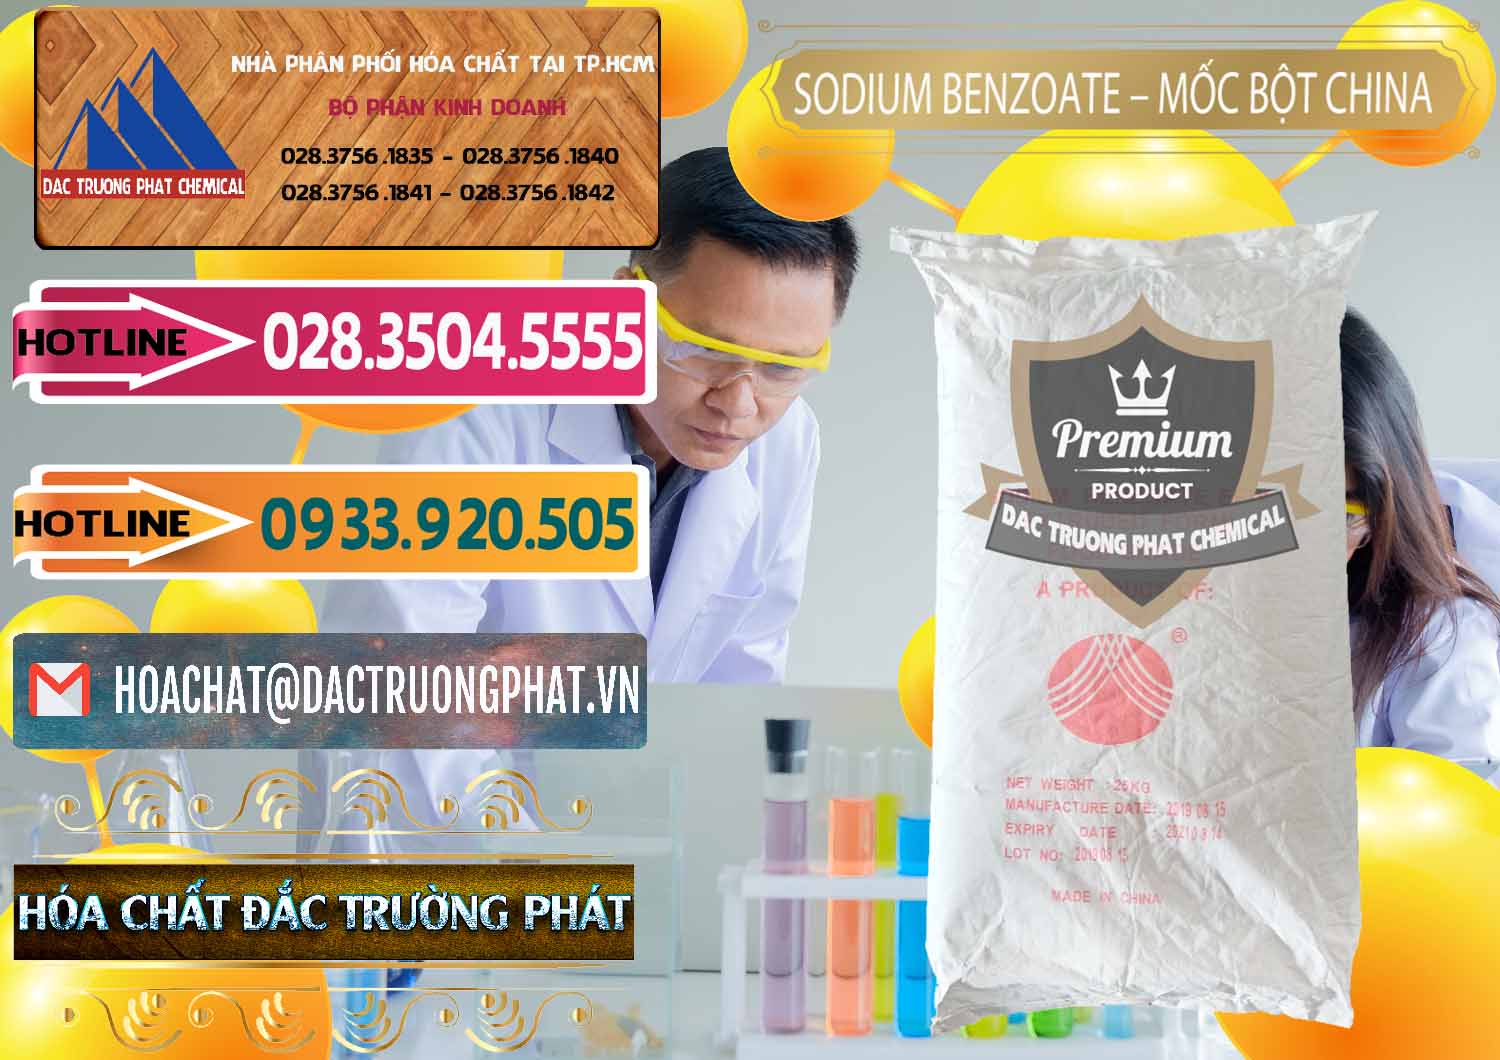 Cty chuyên bán & cung cấp Sodium Benzoate - Mốc Bột Chữ Cam Food Grade Trung Quốc China - 0135 - Cung cấp ( nhập khẩu ) hóa chất tại TP.HCM - dactruongphat.vn